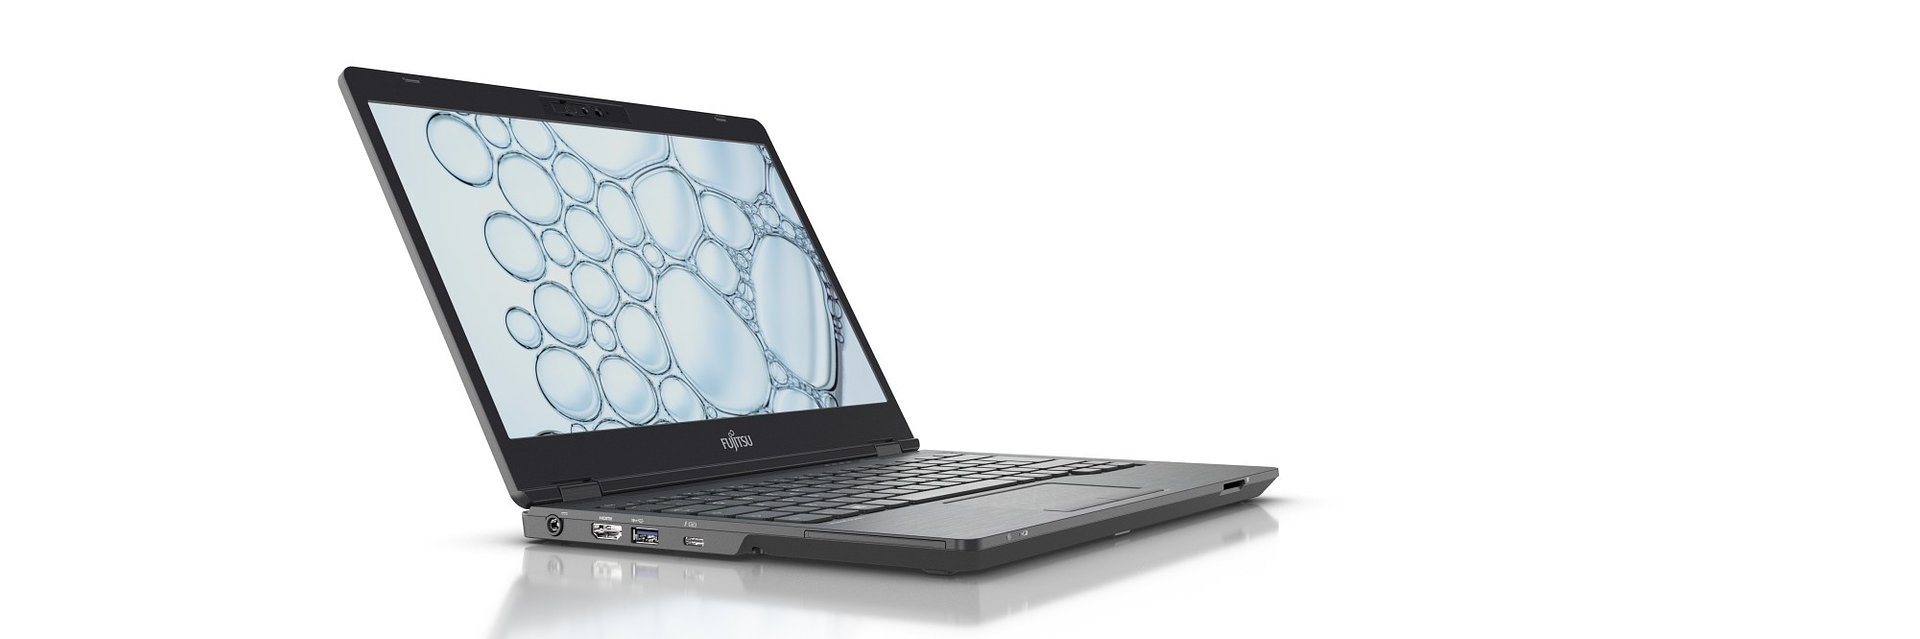 Bezpieczeństwo i mobilność – notebooki i tablety Fujitsu w nowej odsłonie